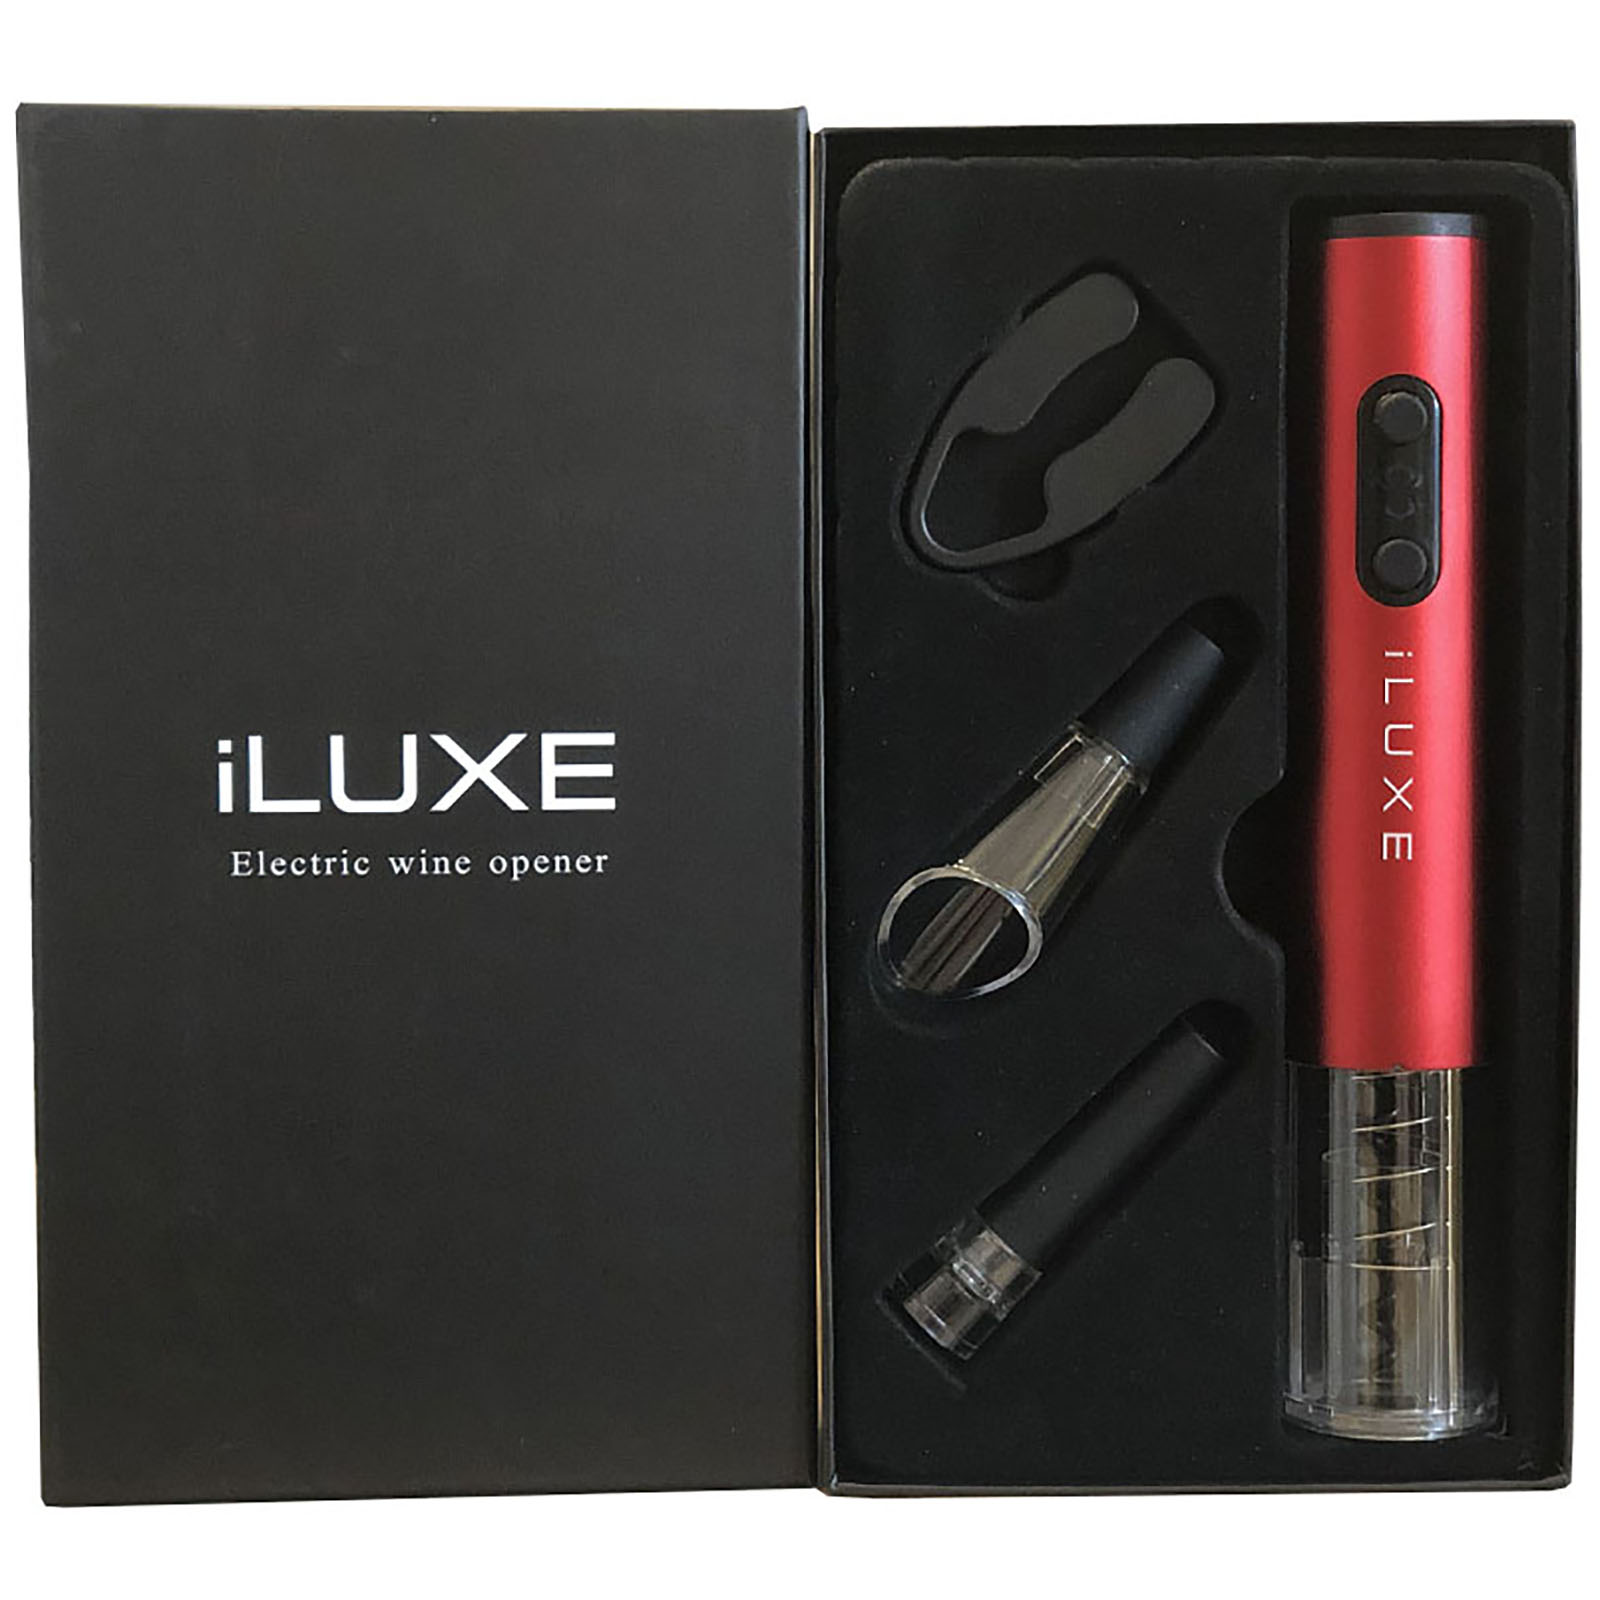 iLUXE винный набор 4 в 1 с электроштопором цвет красный (Soul Red) (Красный)